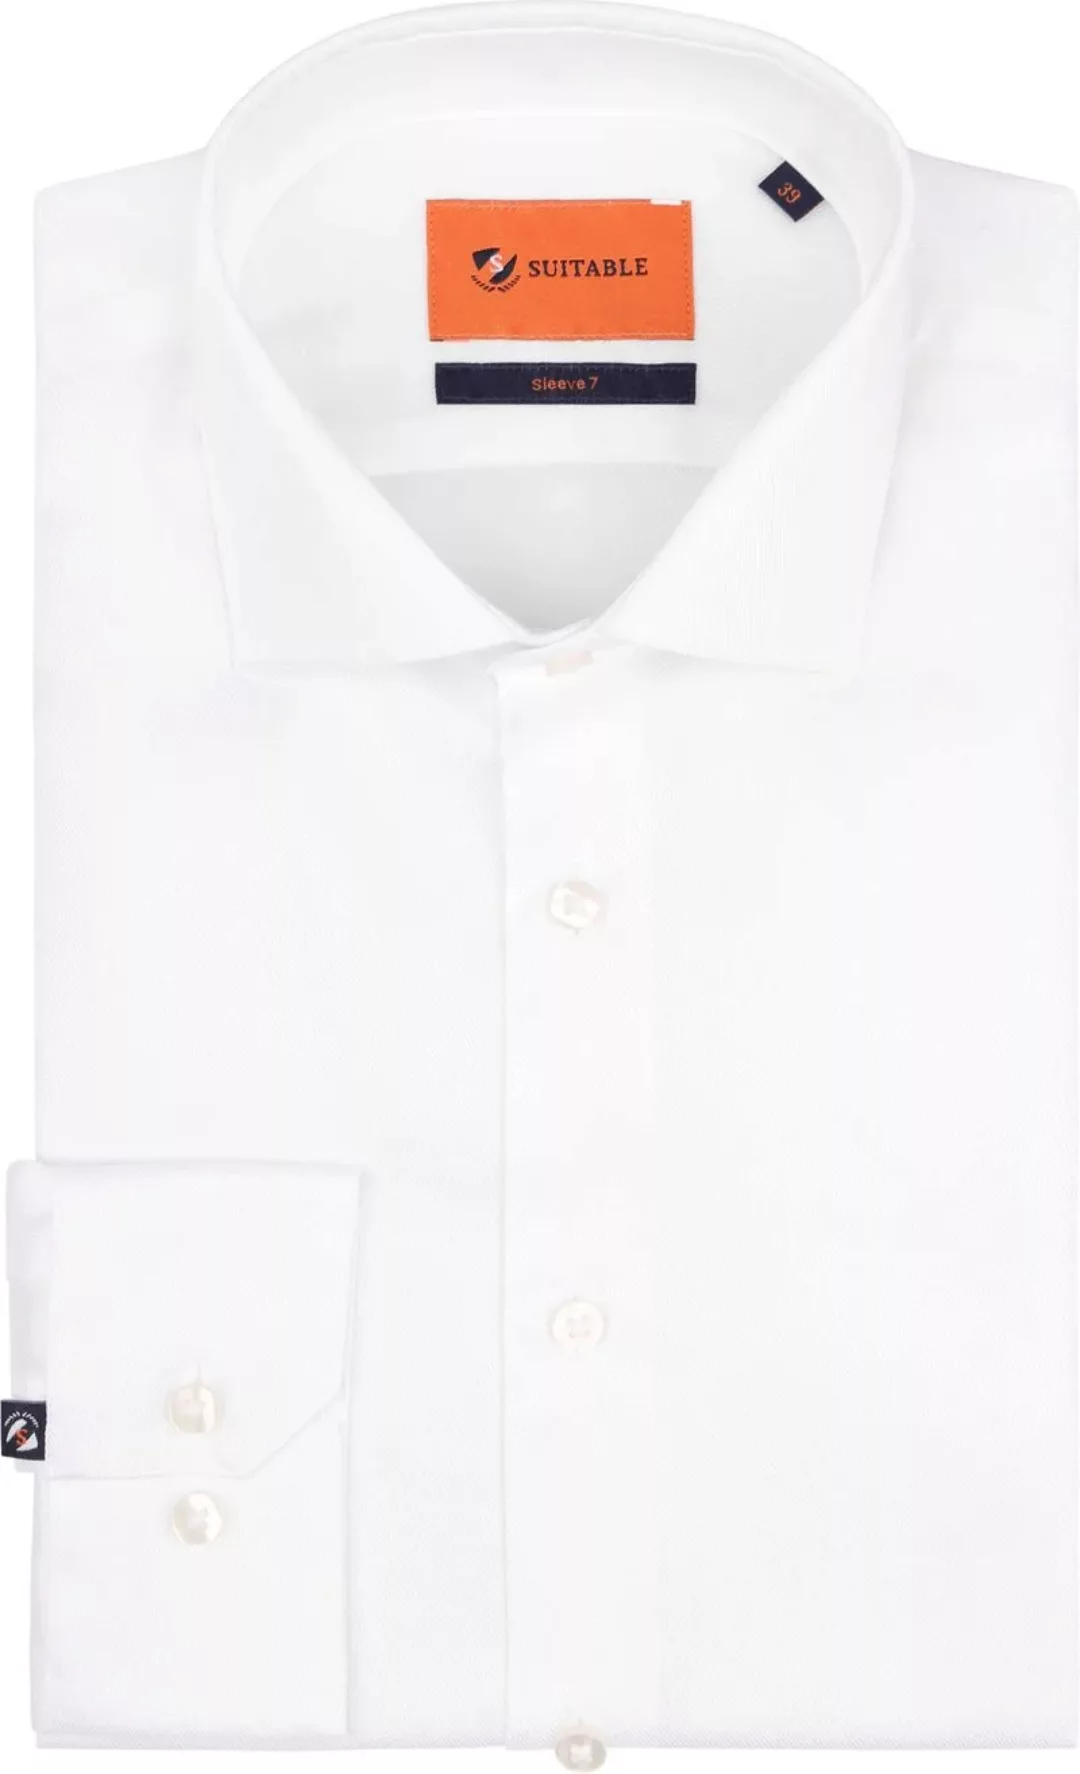 Suitable Hemd Extra Lange Ärmel Twill Weiß - Größe 44 günstig online kaufen